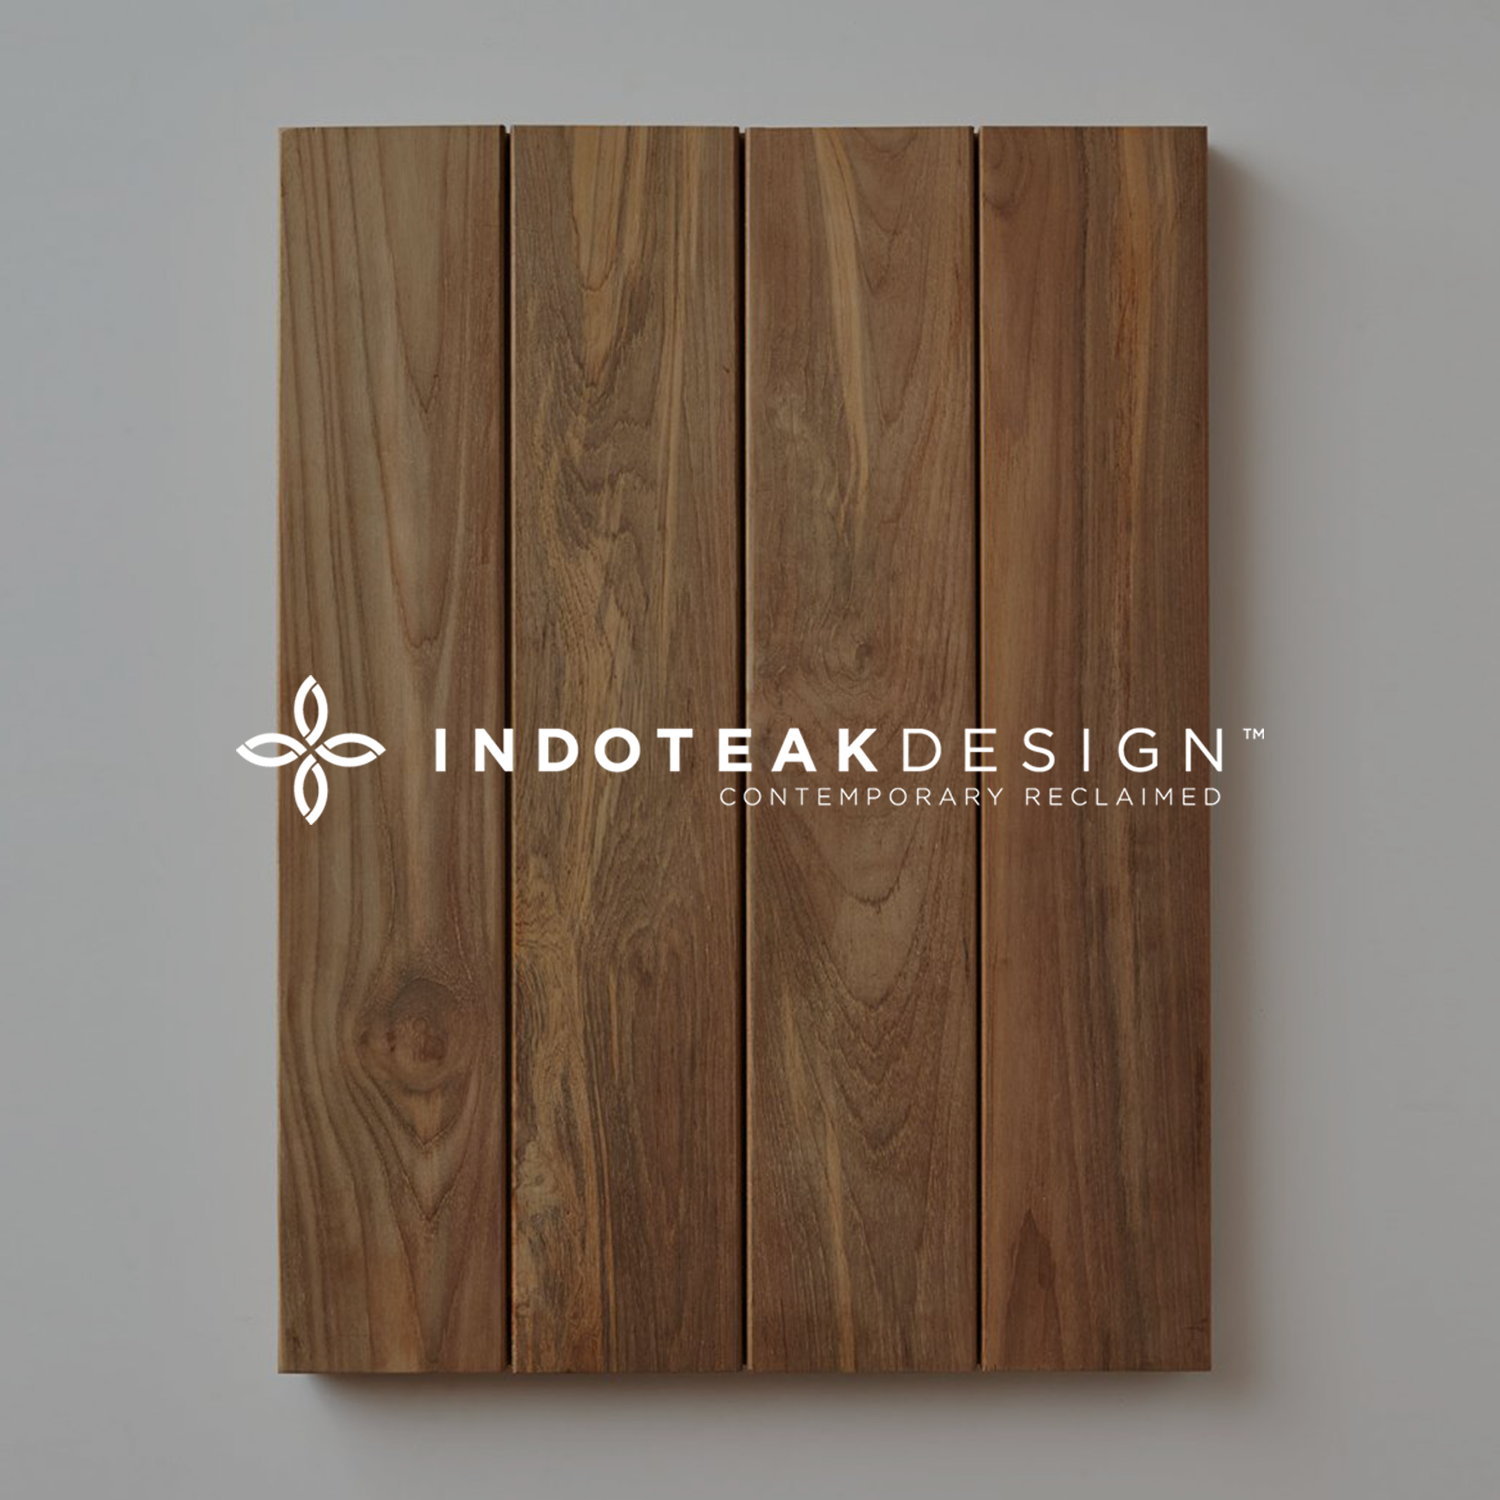 2-Indoteakdesign.png